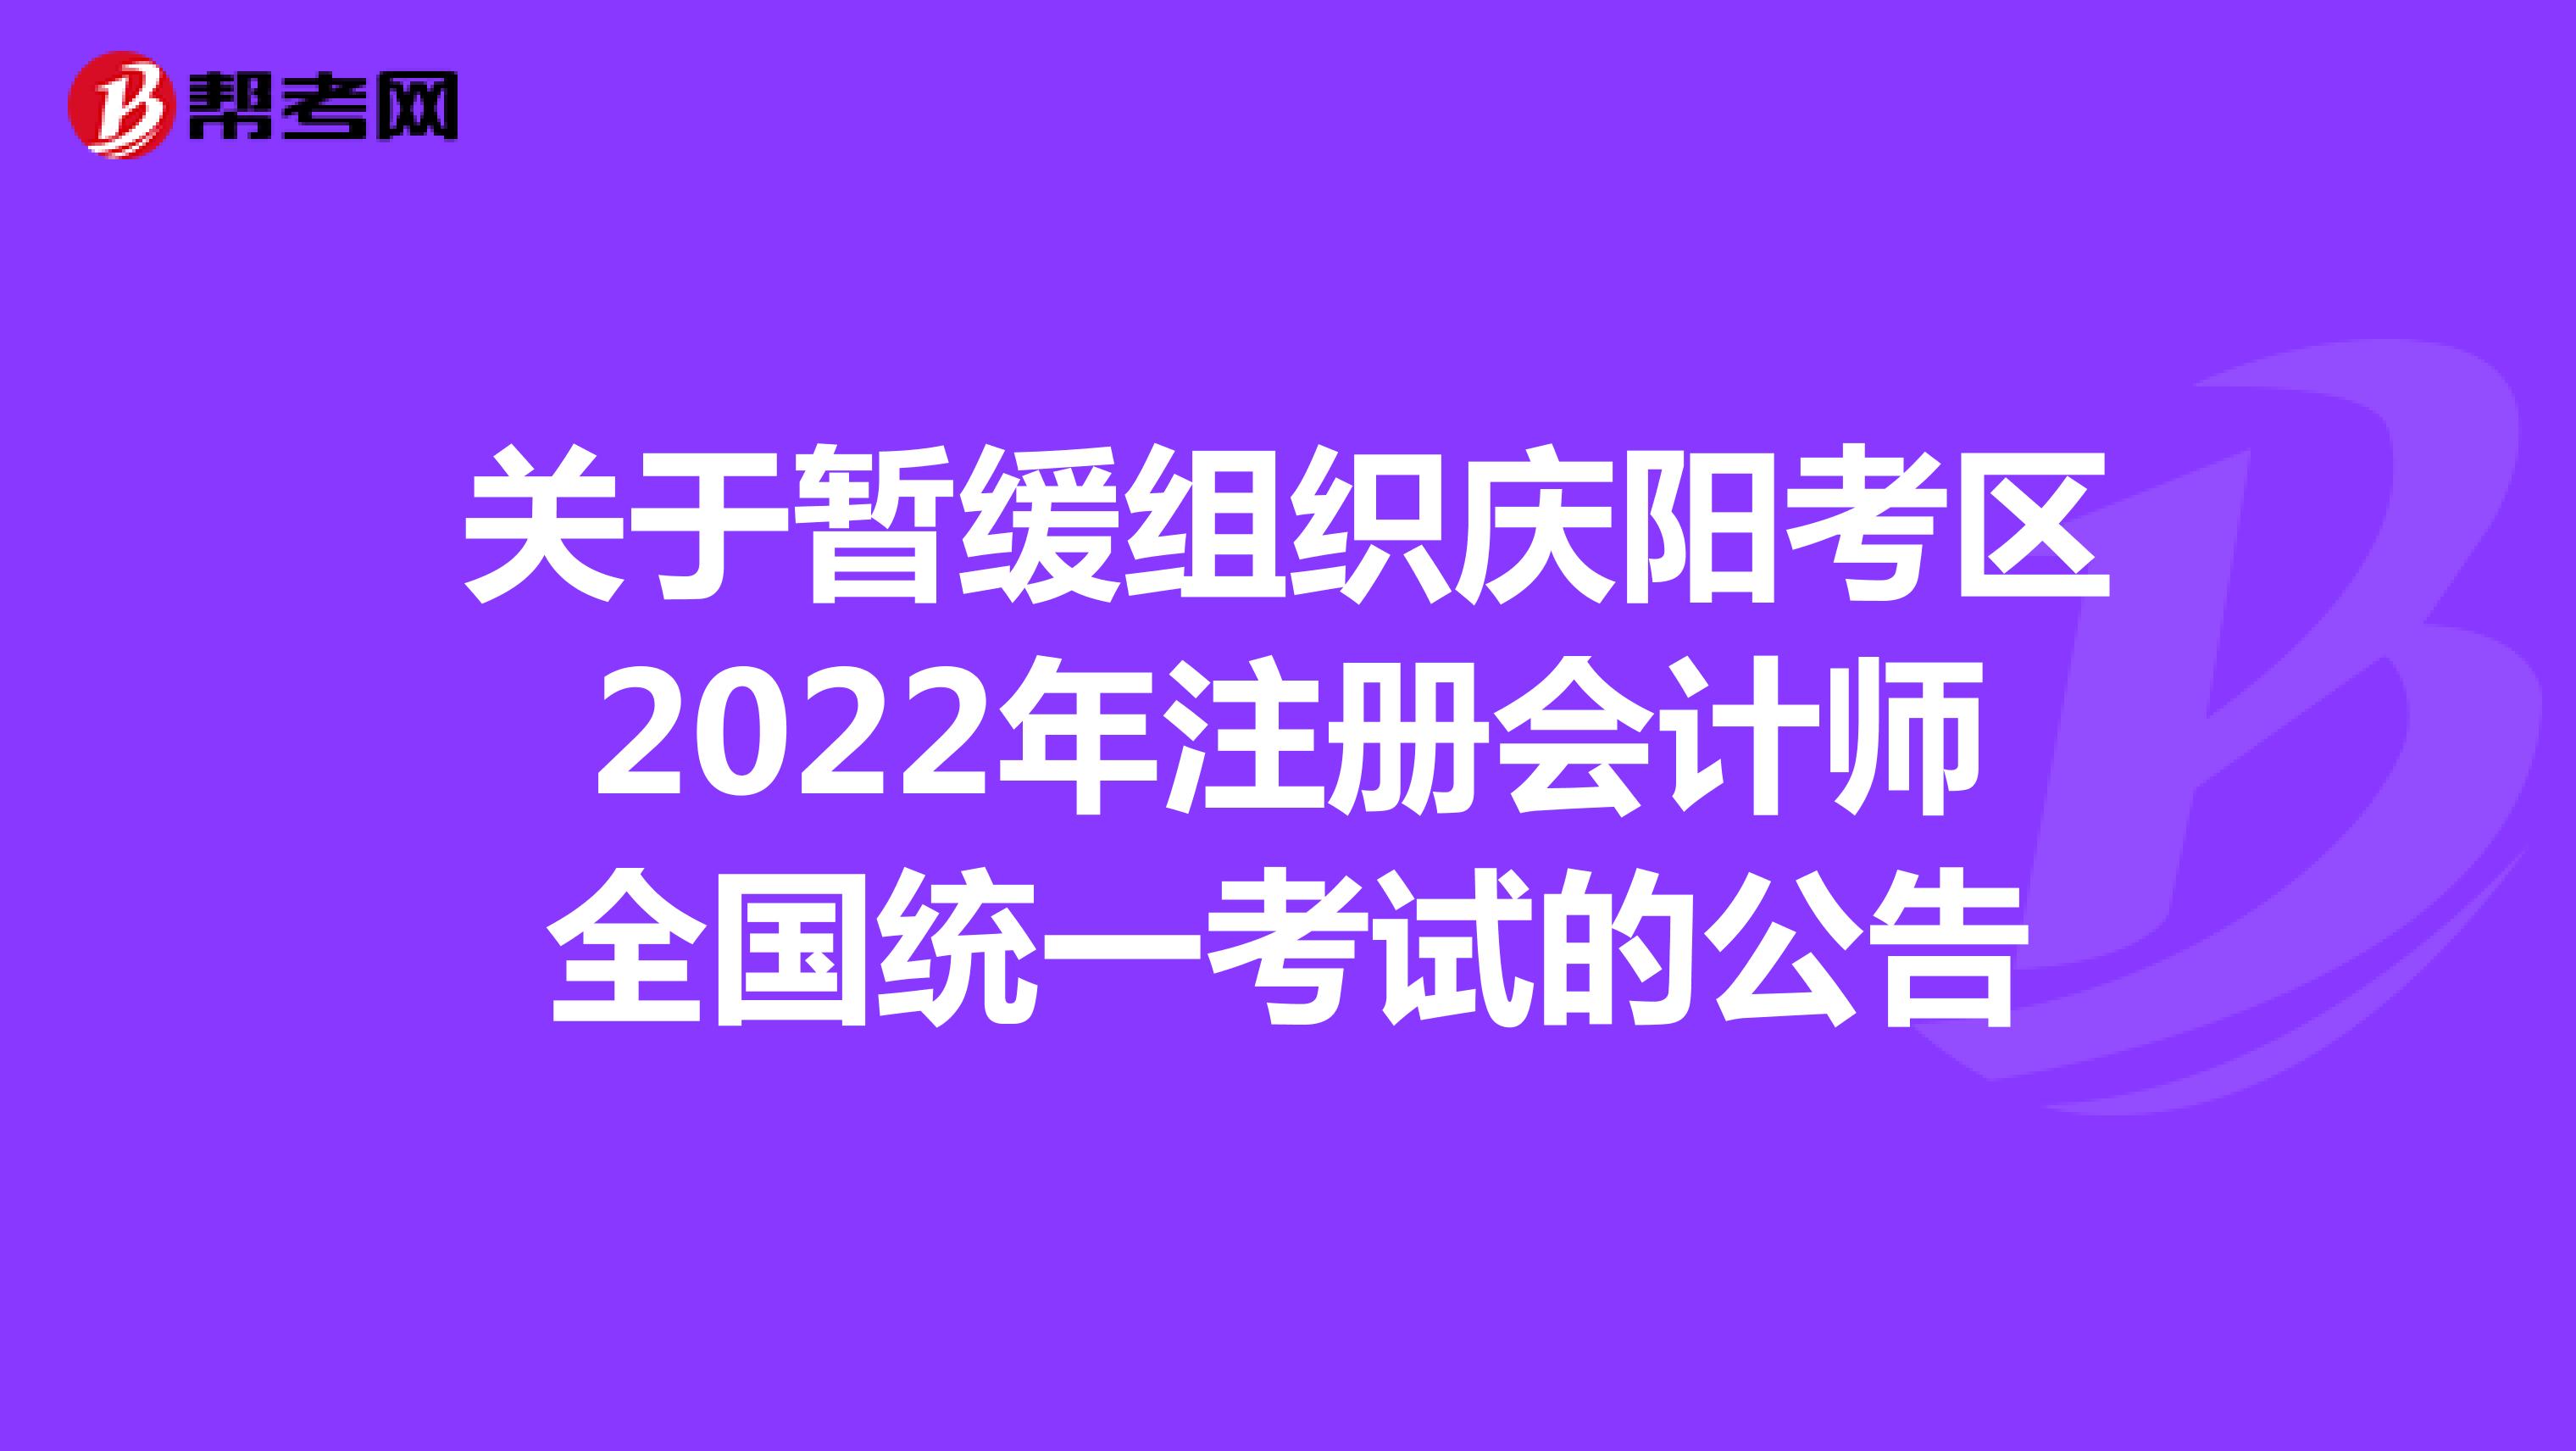 关于暂缓组织庆阳考区2022年注册会计师全国统一考试的公告